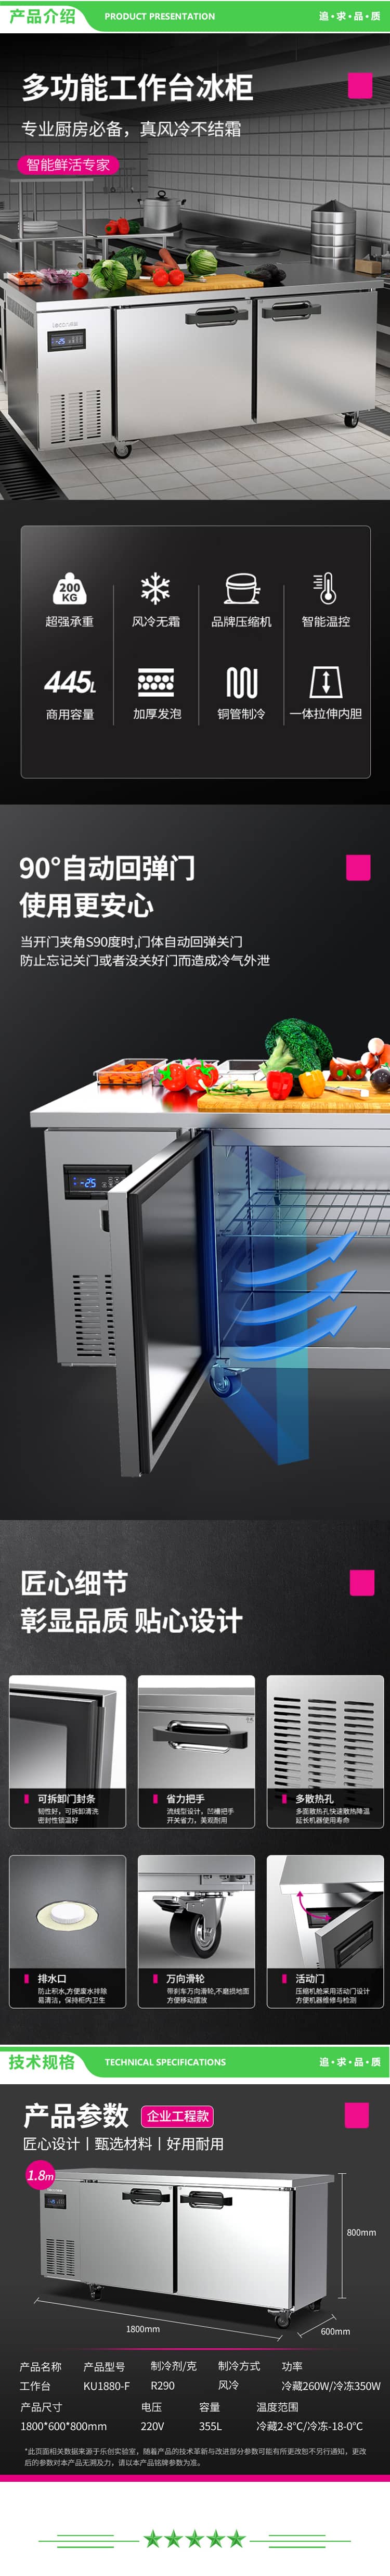 乐创 lecon KU1880-F 冷藏工作台保鲜操作台冰柜 卧式冰柜厨房高端风冷冰箱1.8X0.6米全保鲜 2.jpg